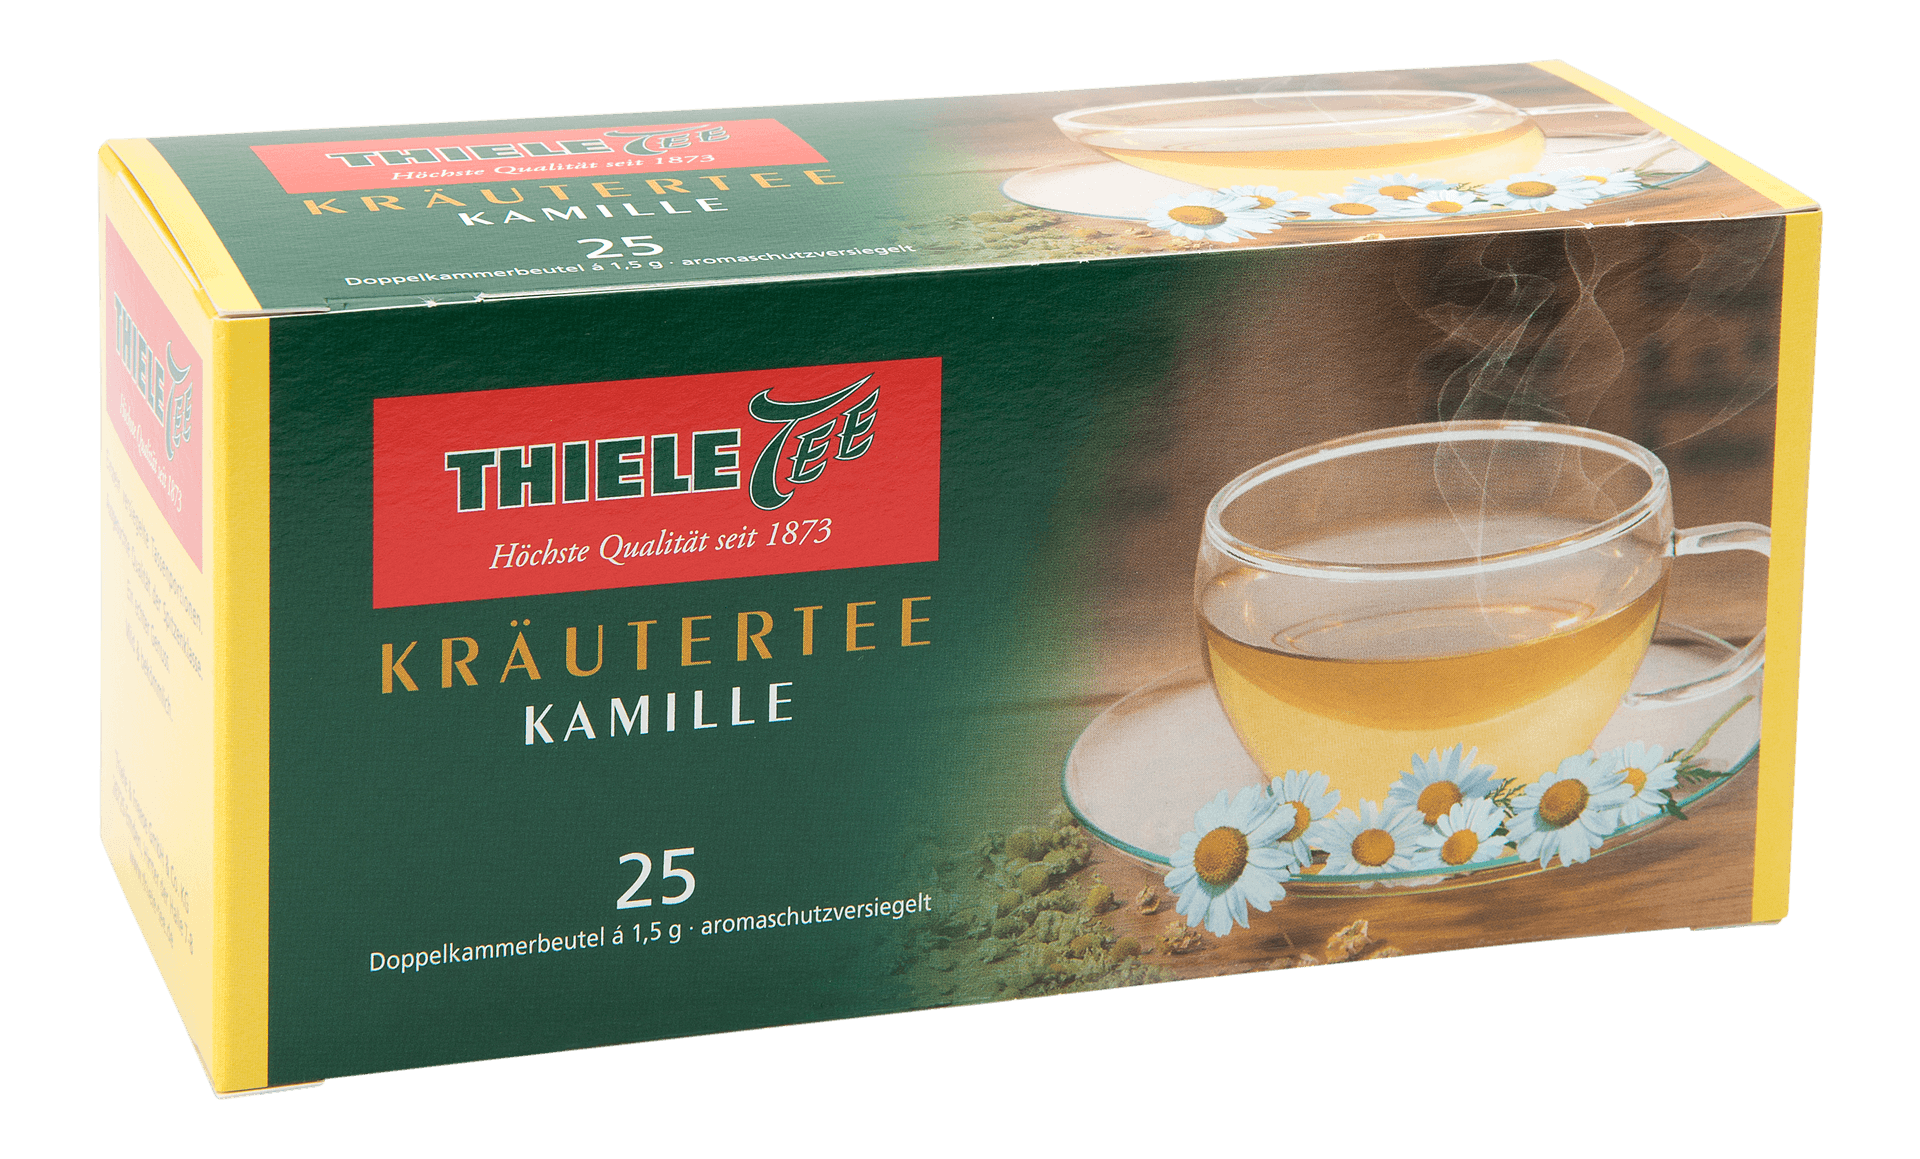 Kräutertee Kamille 25 x 1,5g